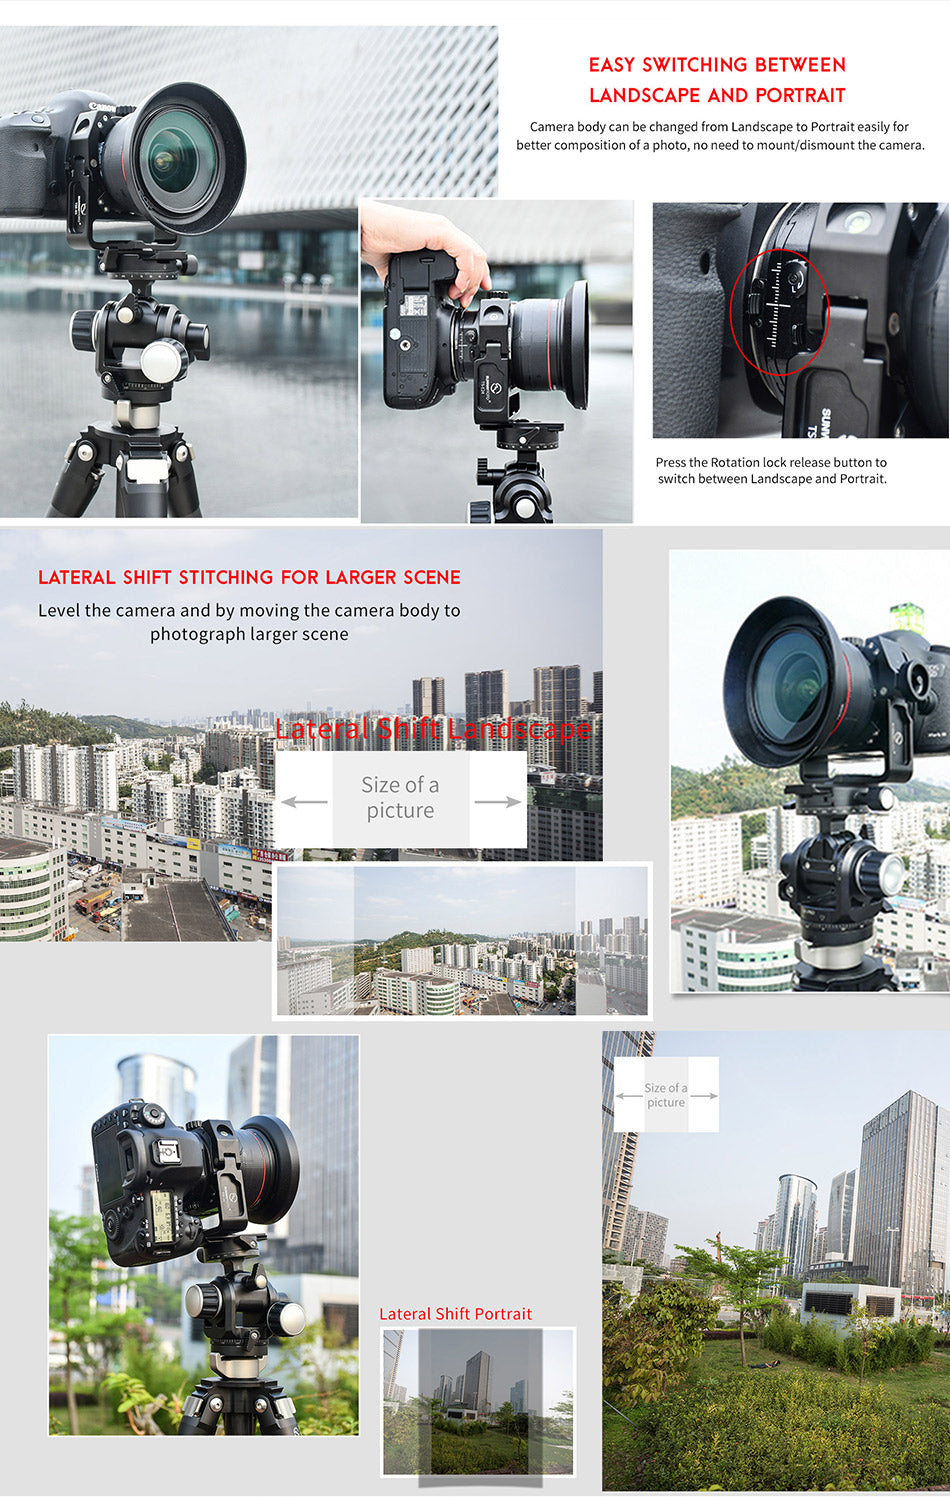 TS-E24 Canon TS-E17/TS-E24 Tilt Shift Lens Bracket